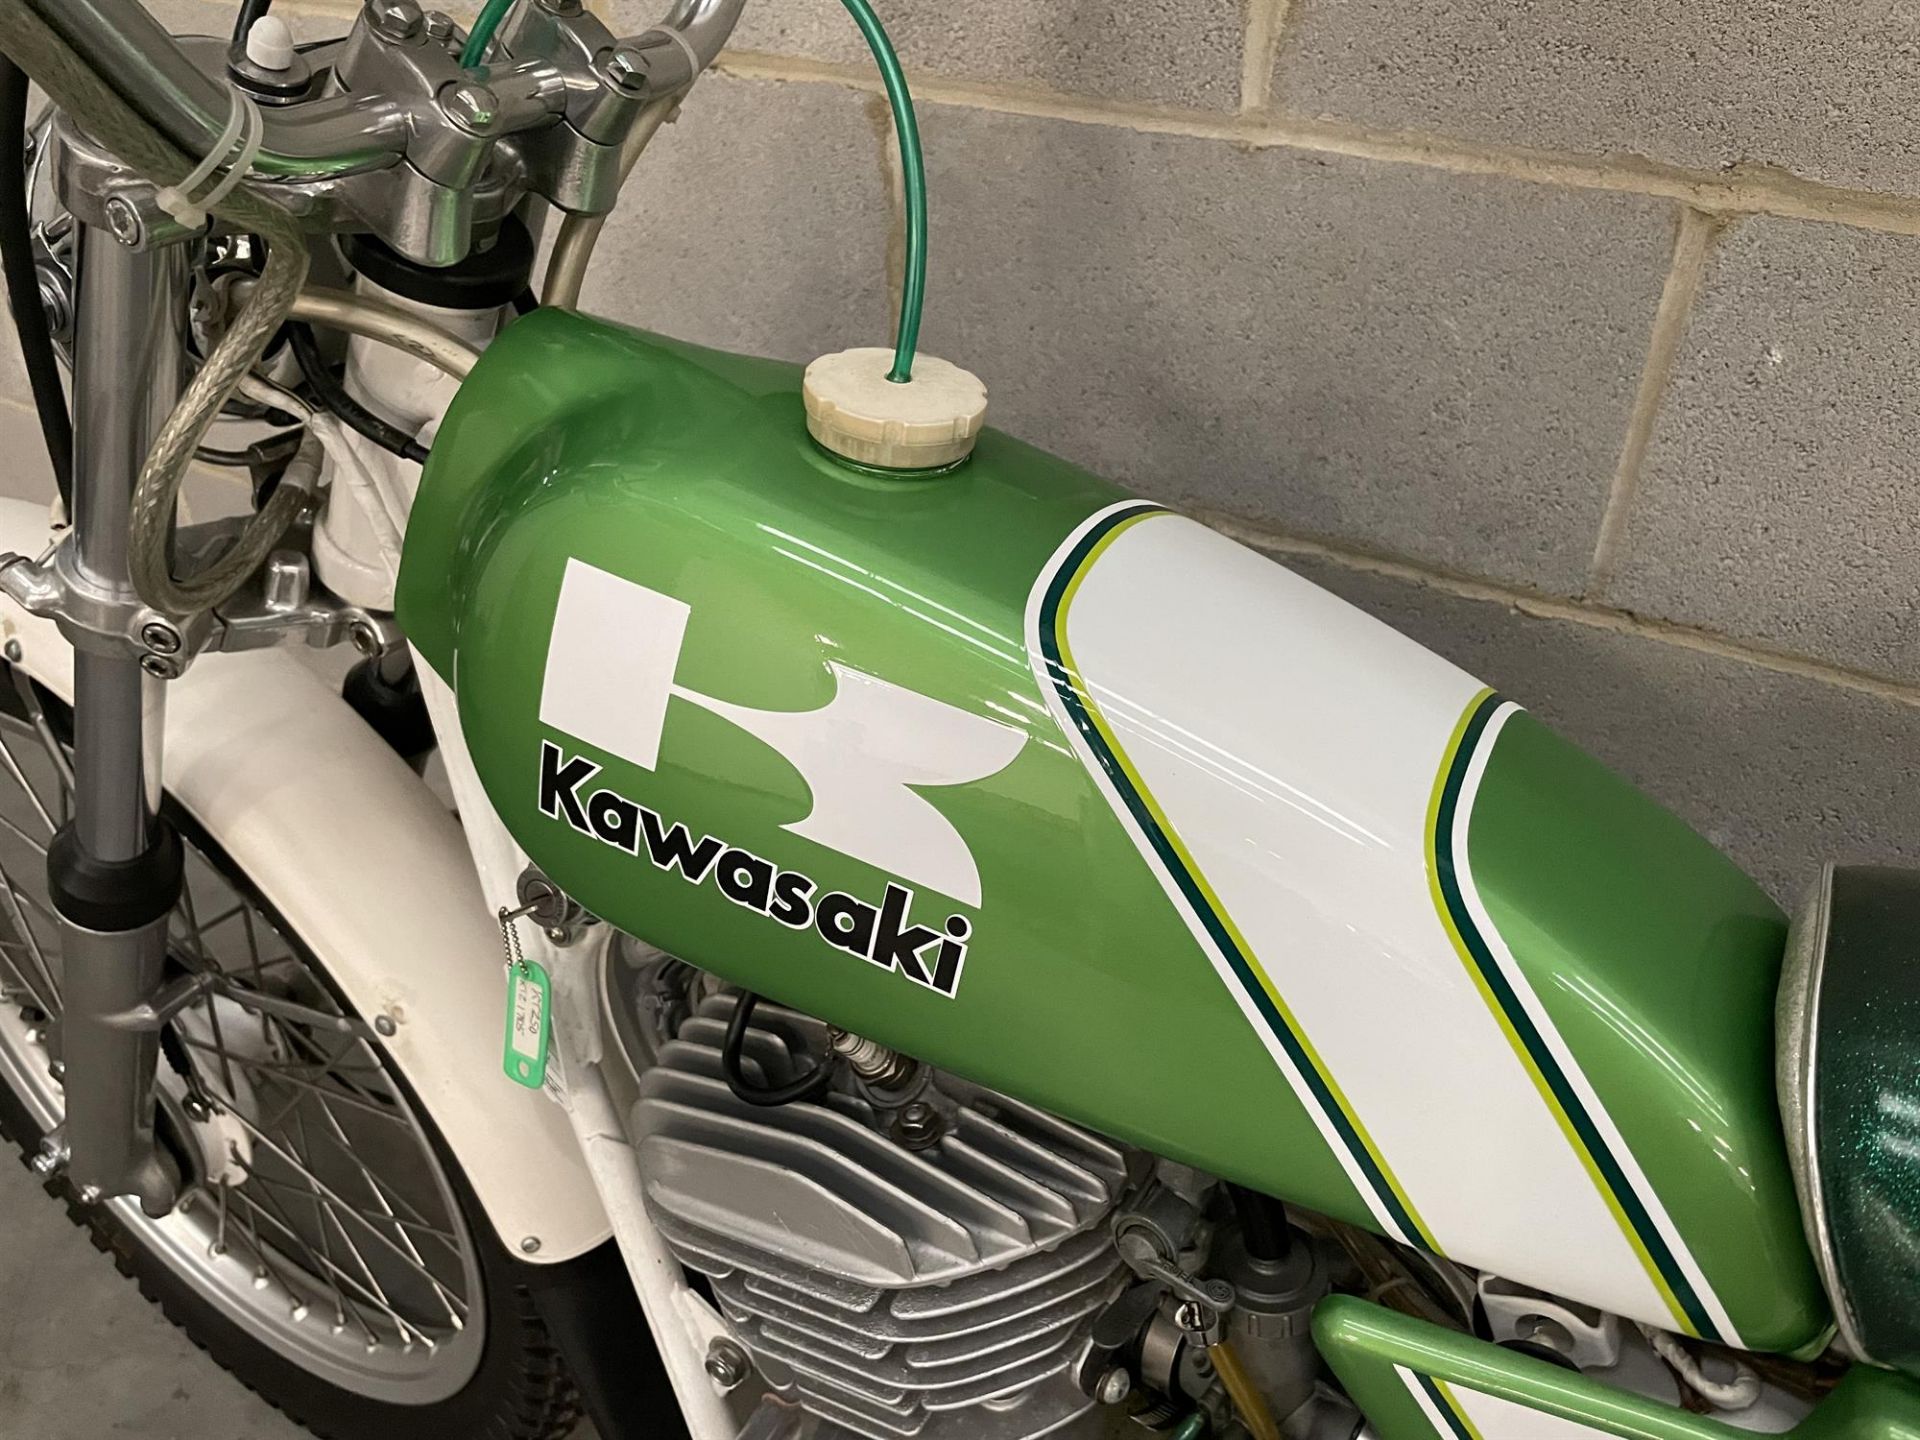 1976 Kawasaki KT250 Trials 250cc - Image 4 of 10